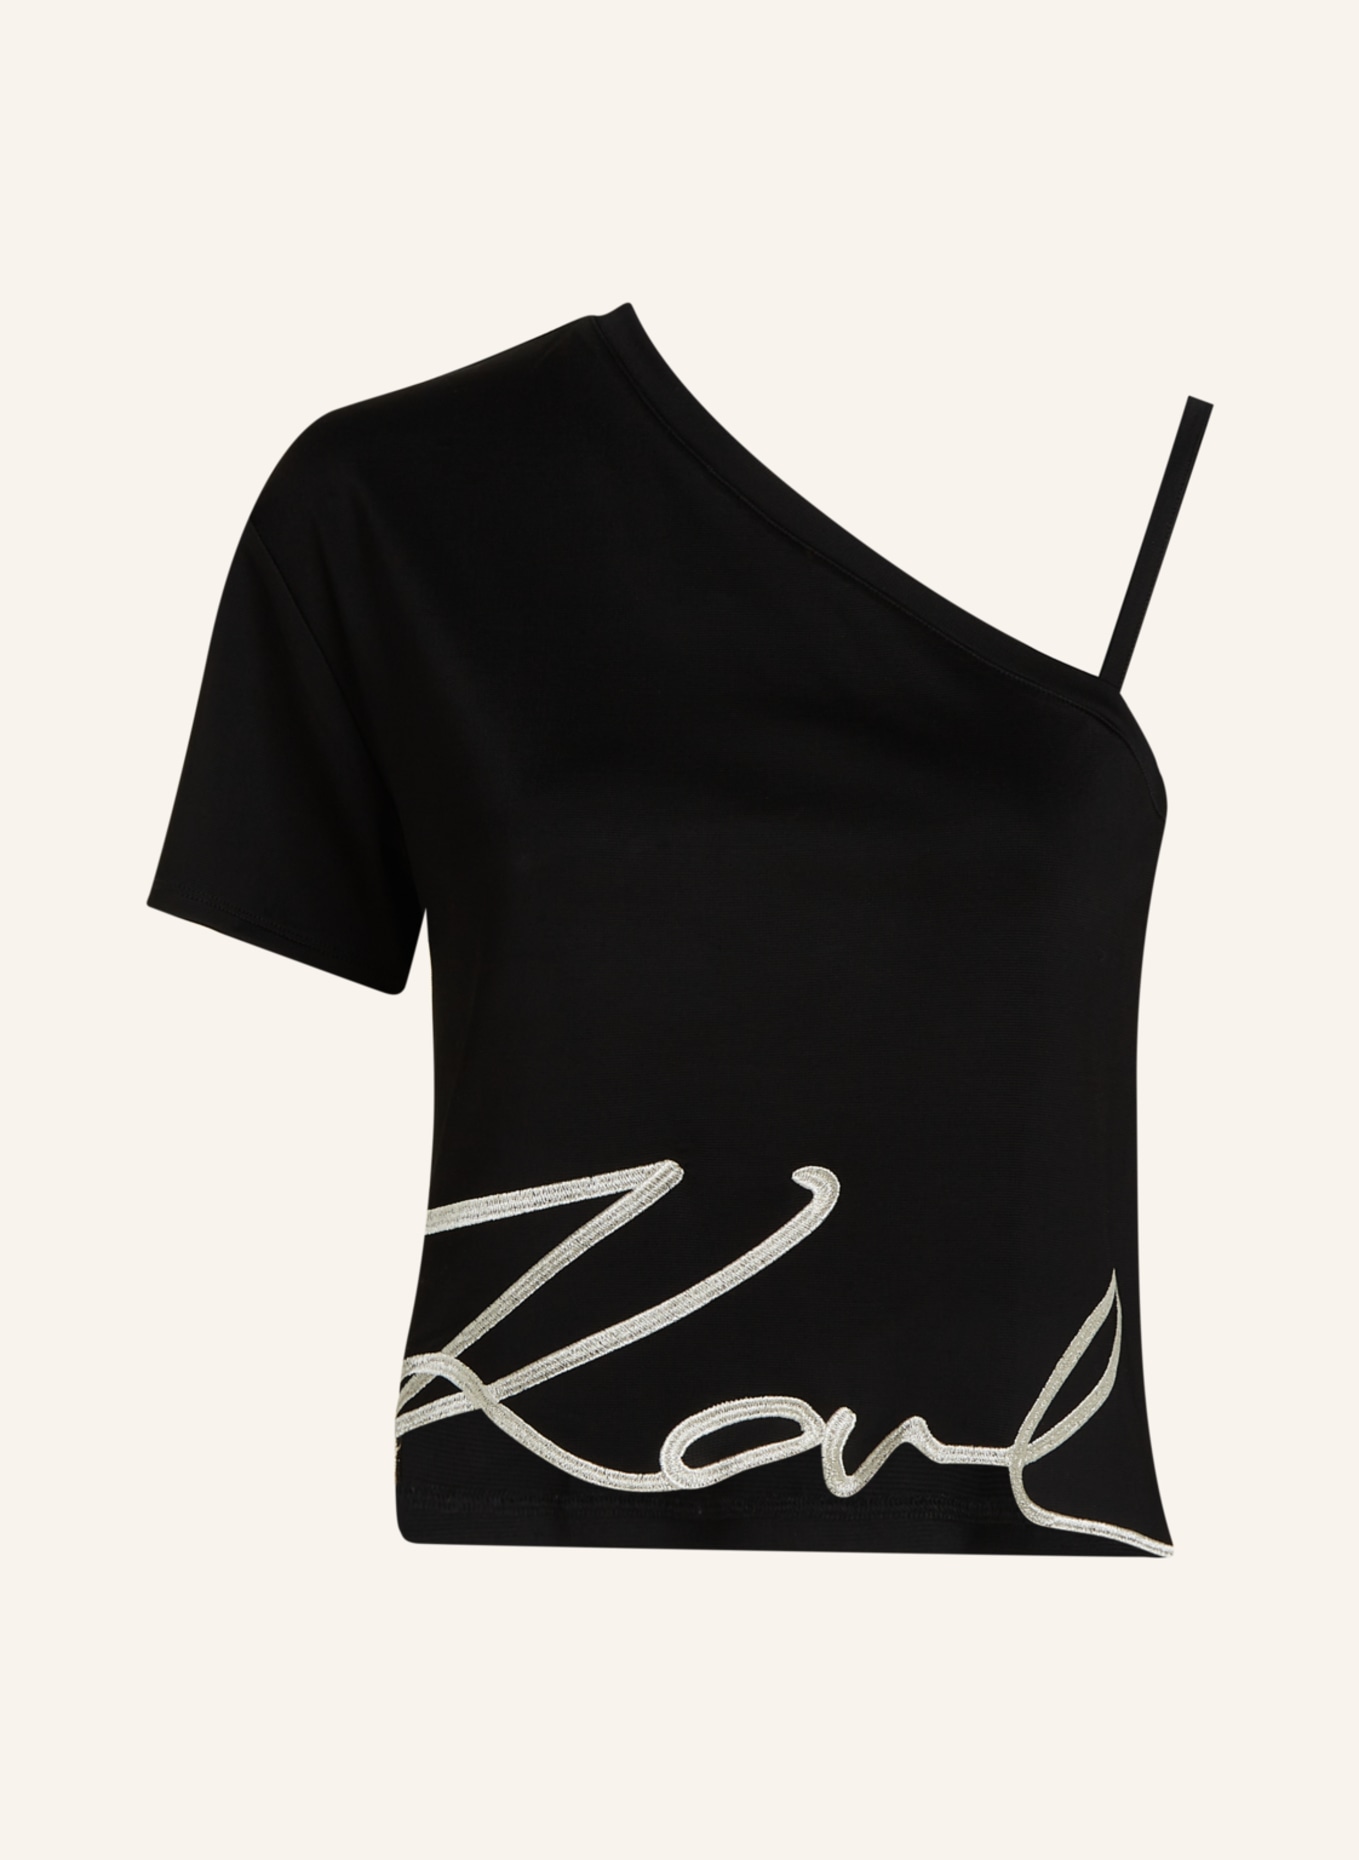 KARL LAGERFELD T-shirt, Farbe: SCHWARZ (Bild 1)